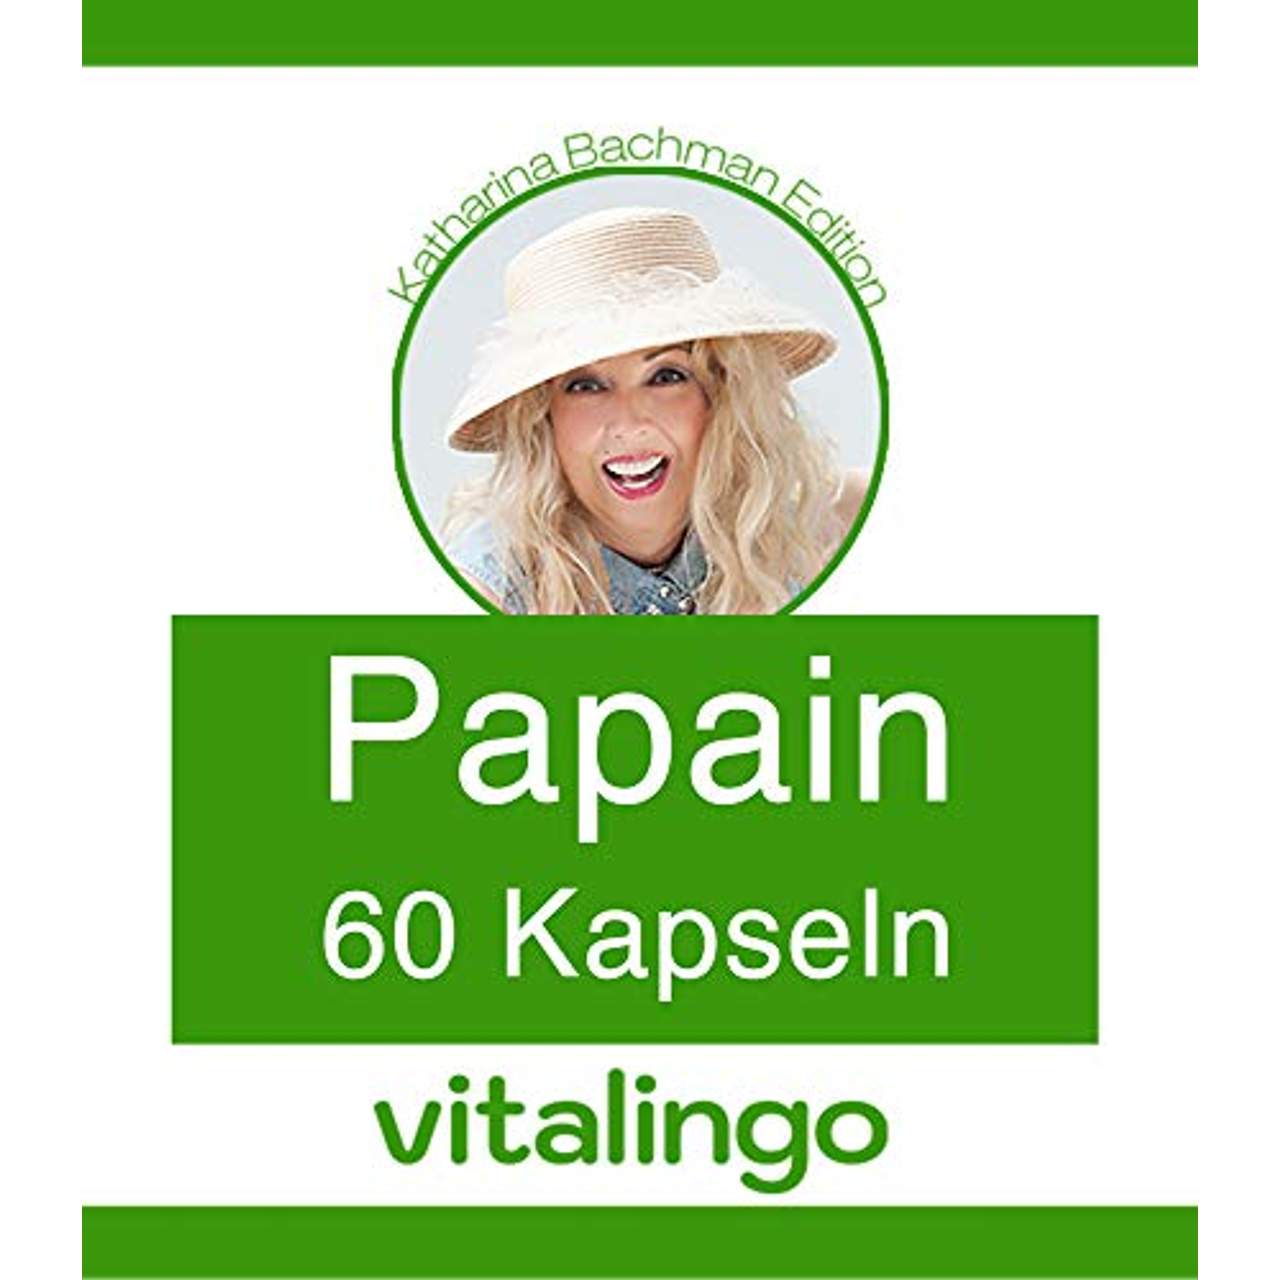 Katharina Bachman Papain Enzym Kapseln